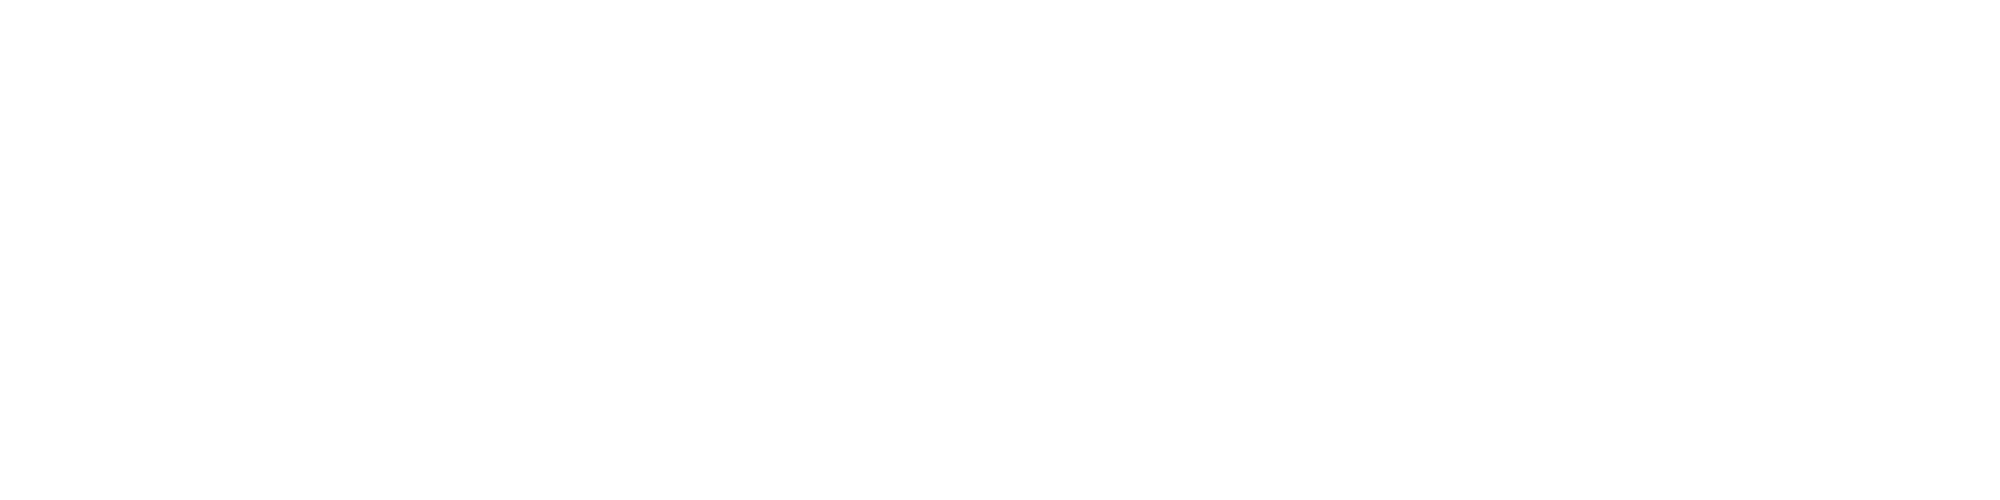 Independent Lens logo